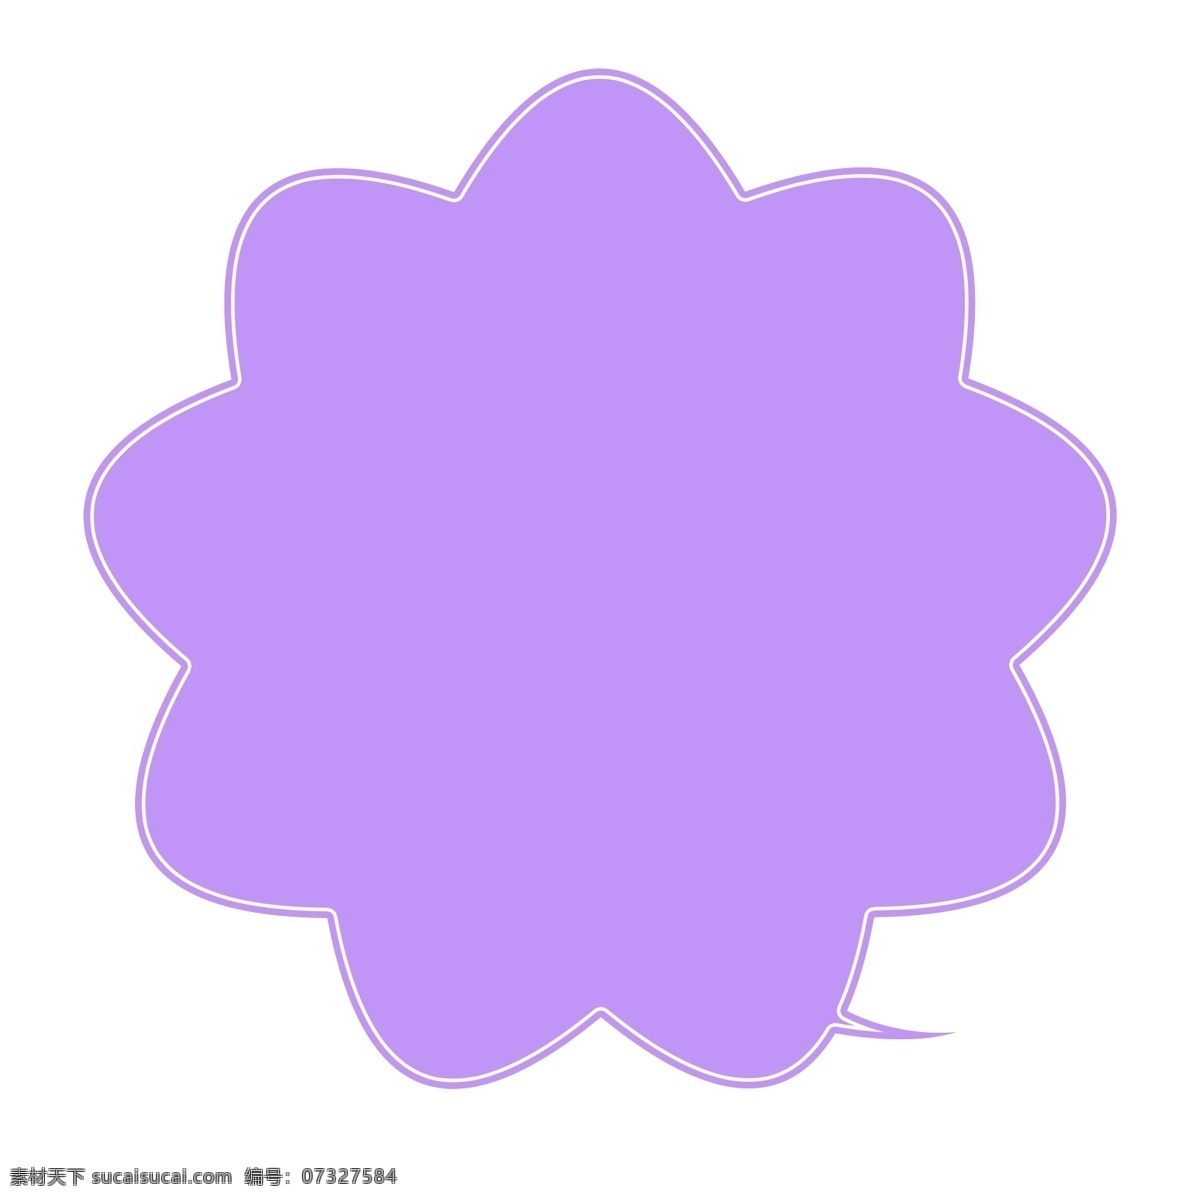 紫色 矢量 卡通 气泡 对话框 文本标题 边框设计 文本框 强调 标题 海报 手绘 banner 手账